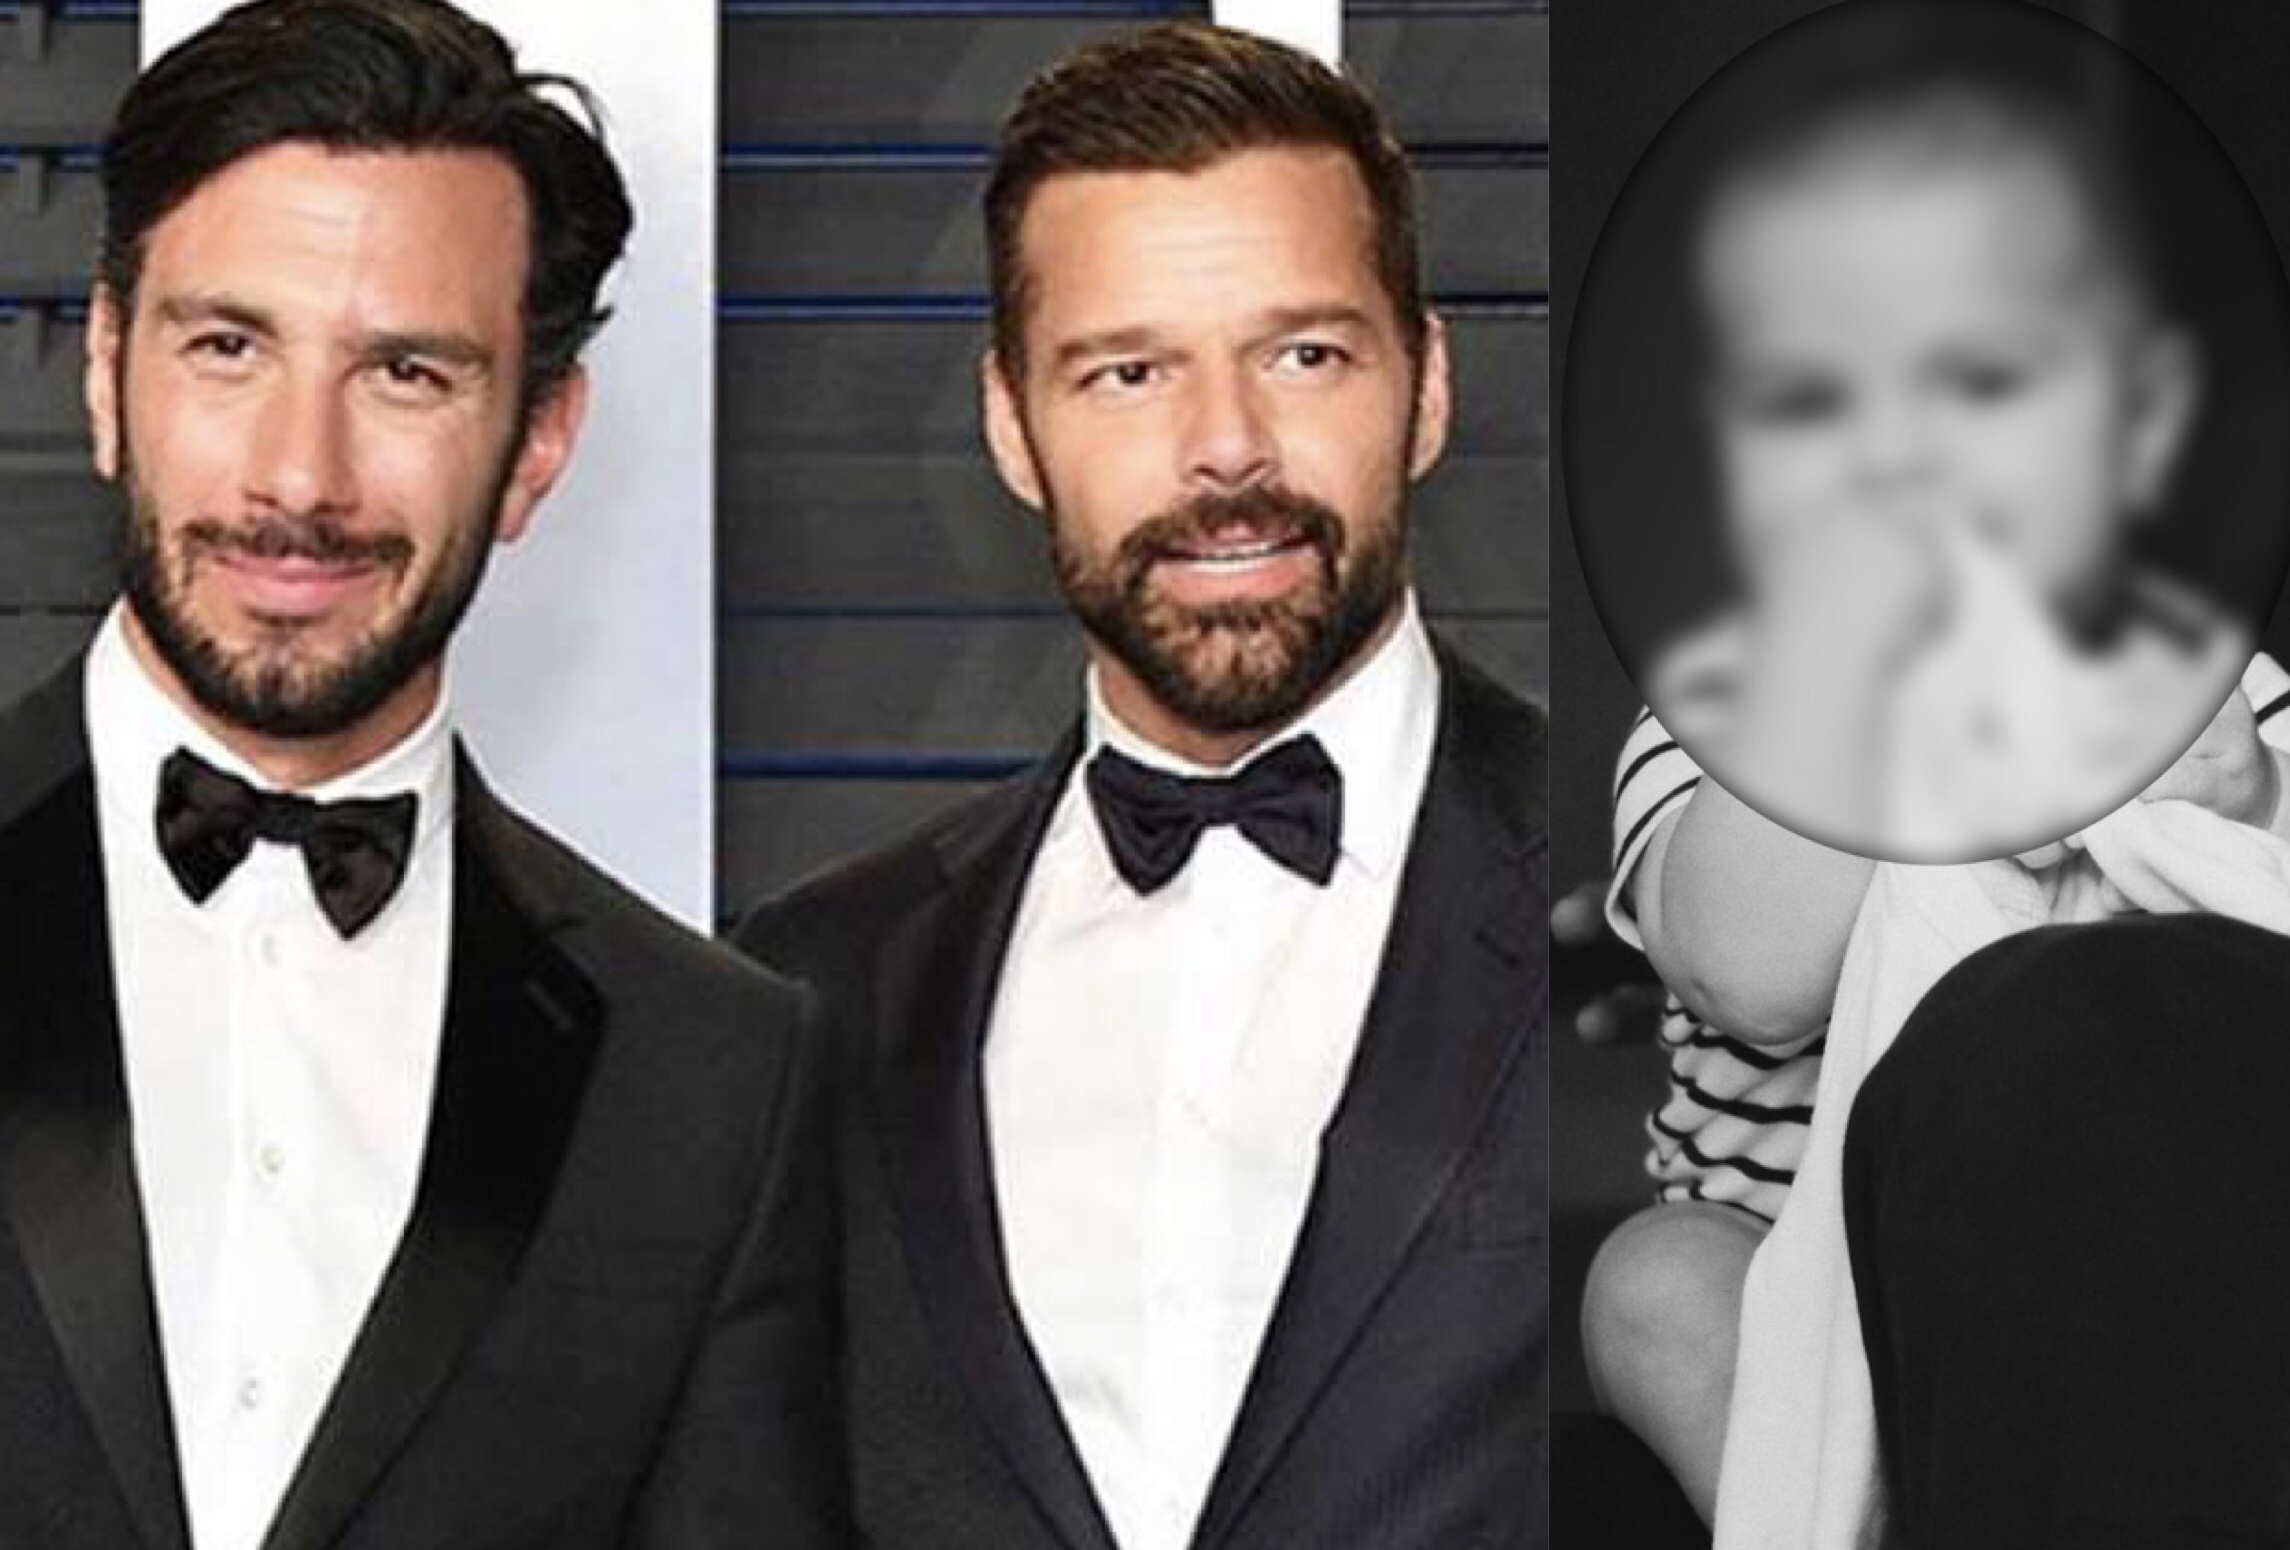 ¿Tienen razón? Los curiosos comentarios sobre el nuevo hijo de Ricky Martin con su esposo